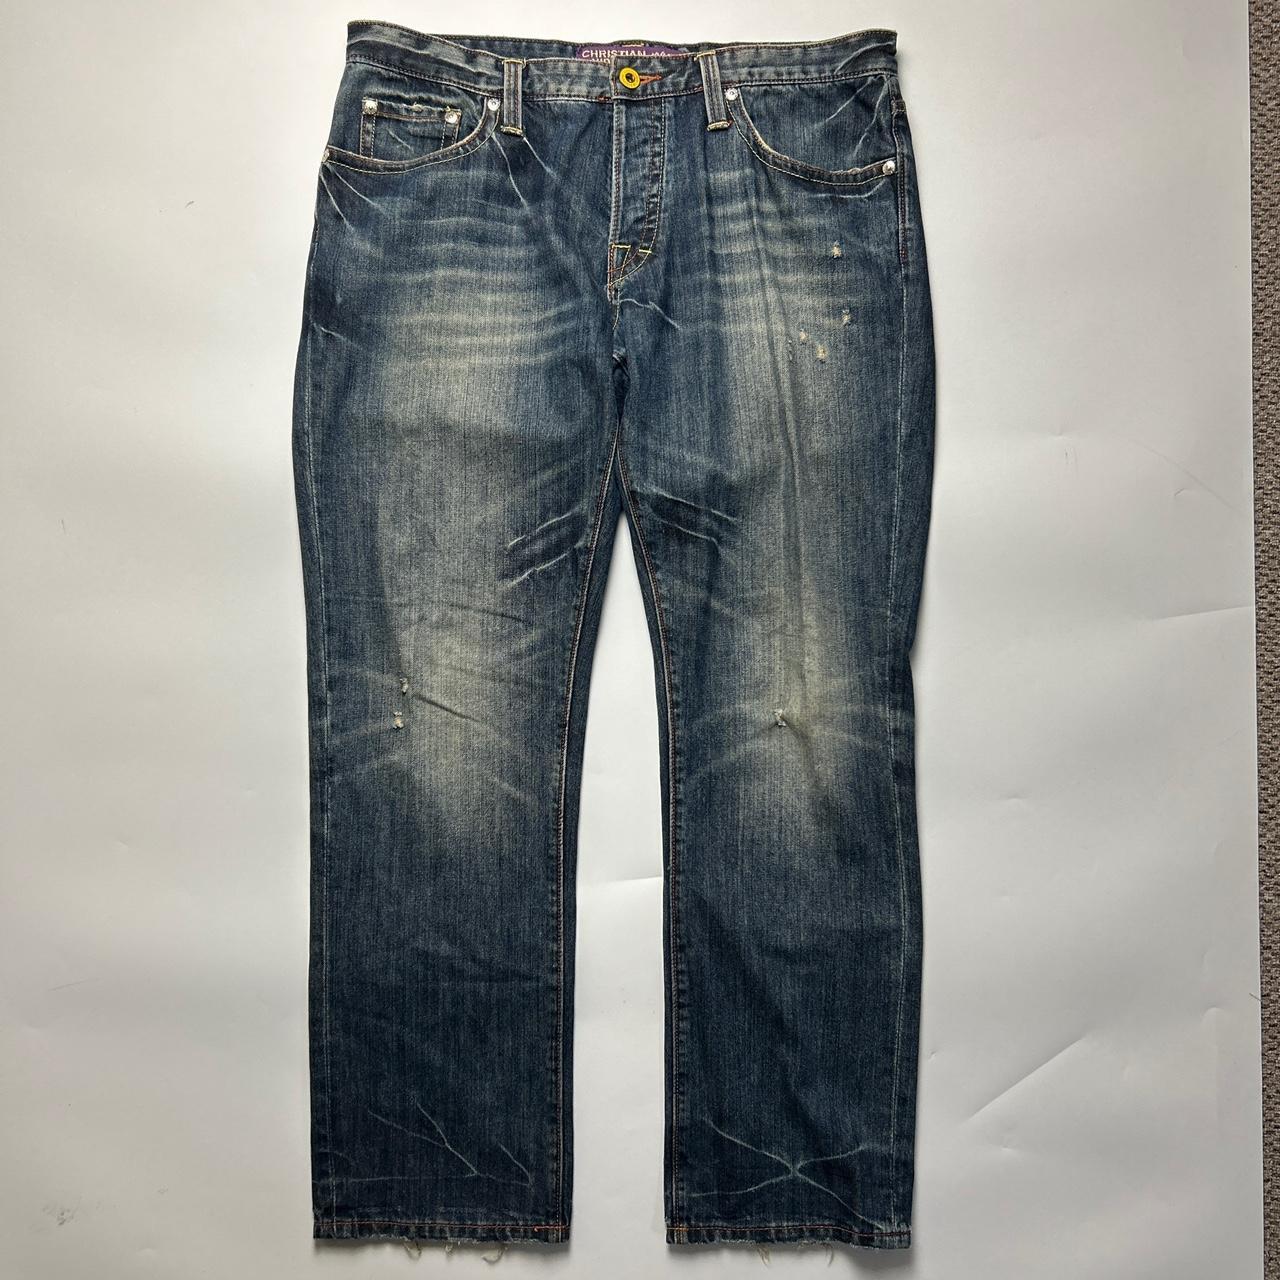 Christian Audigier Jeans (36")